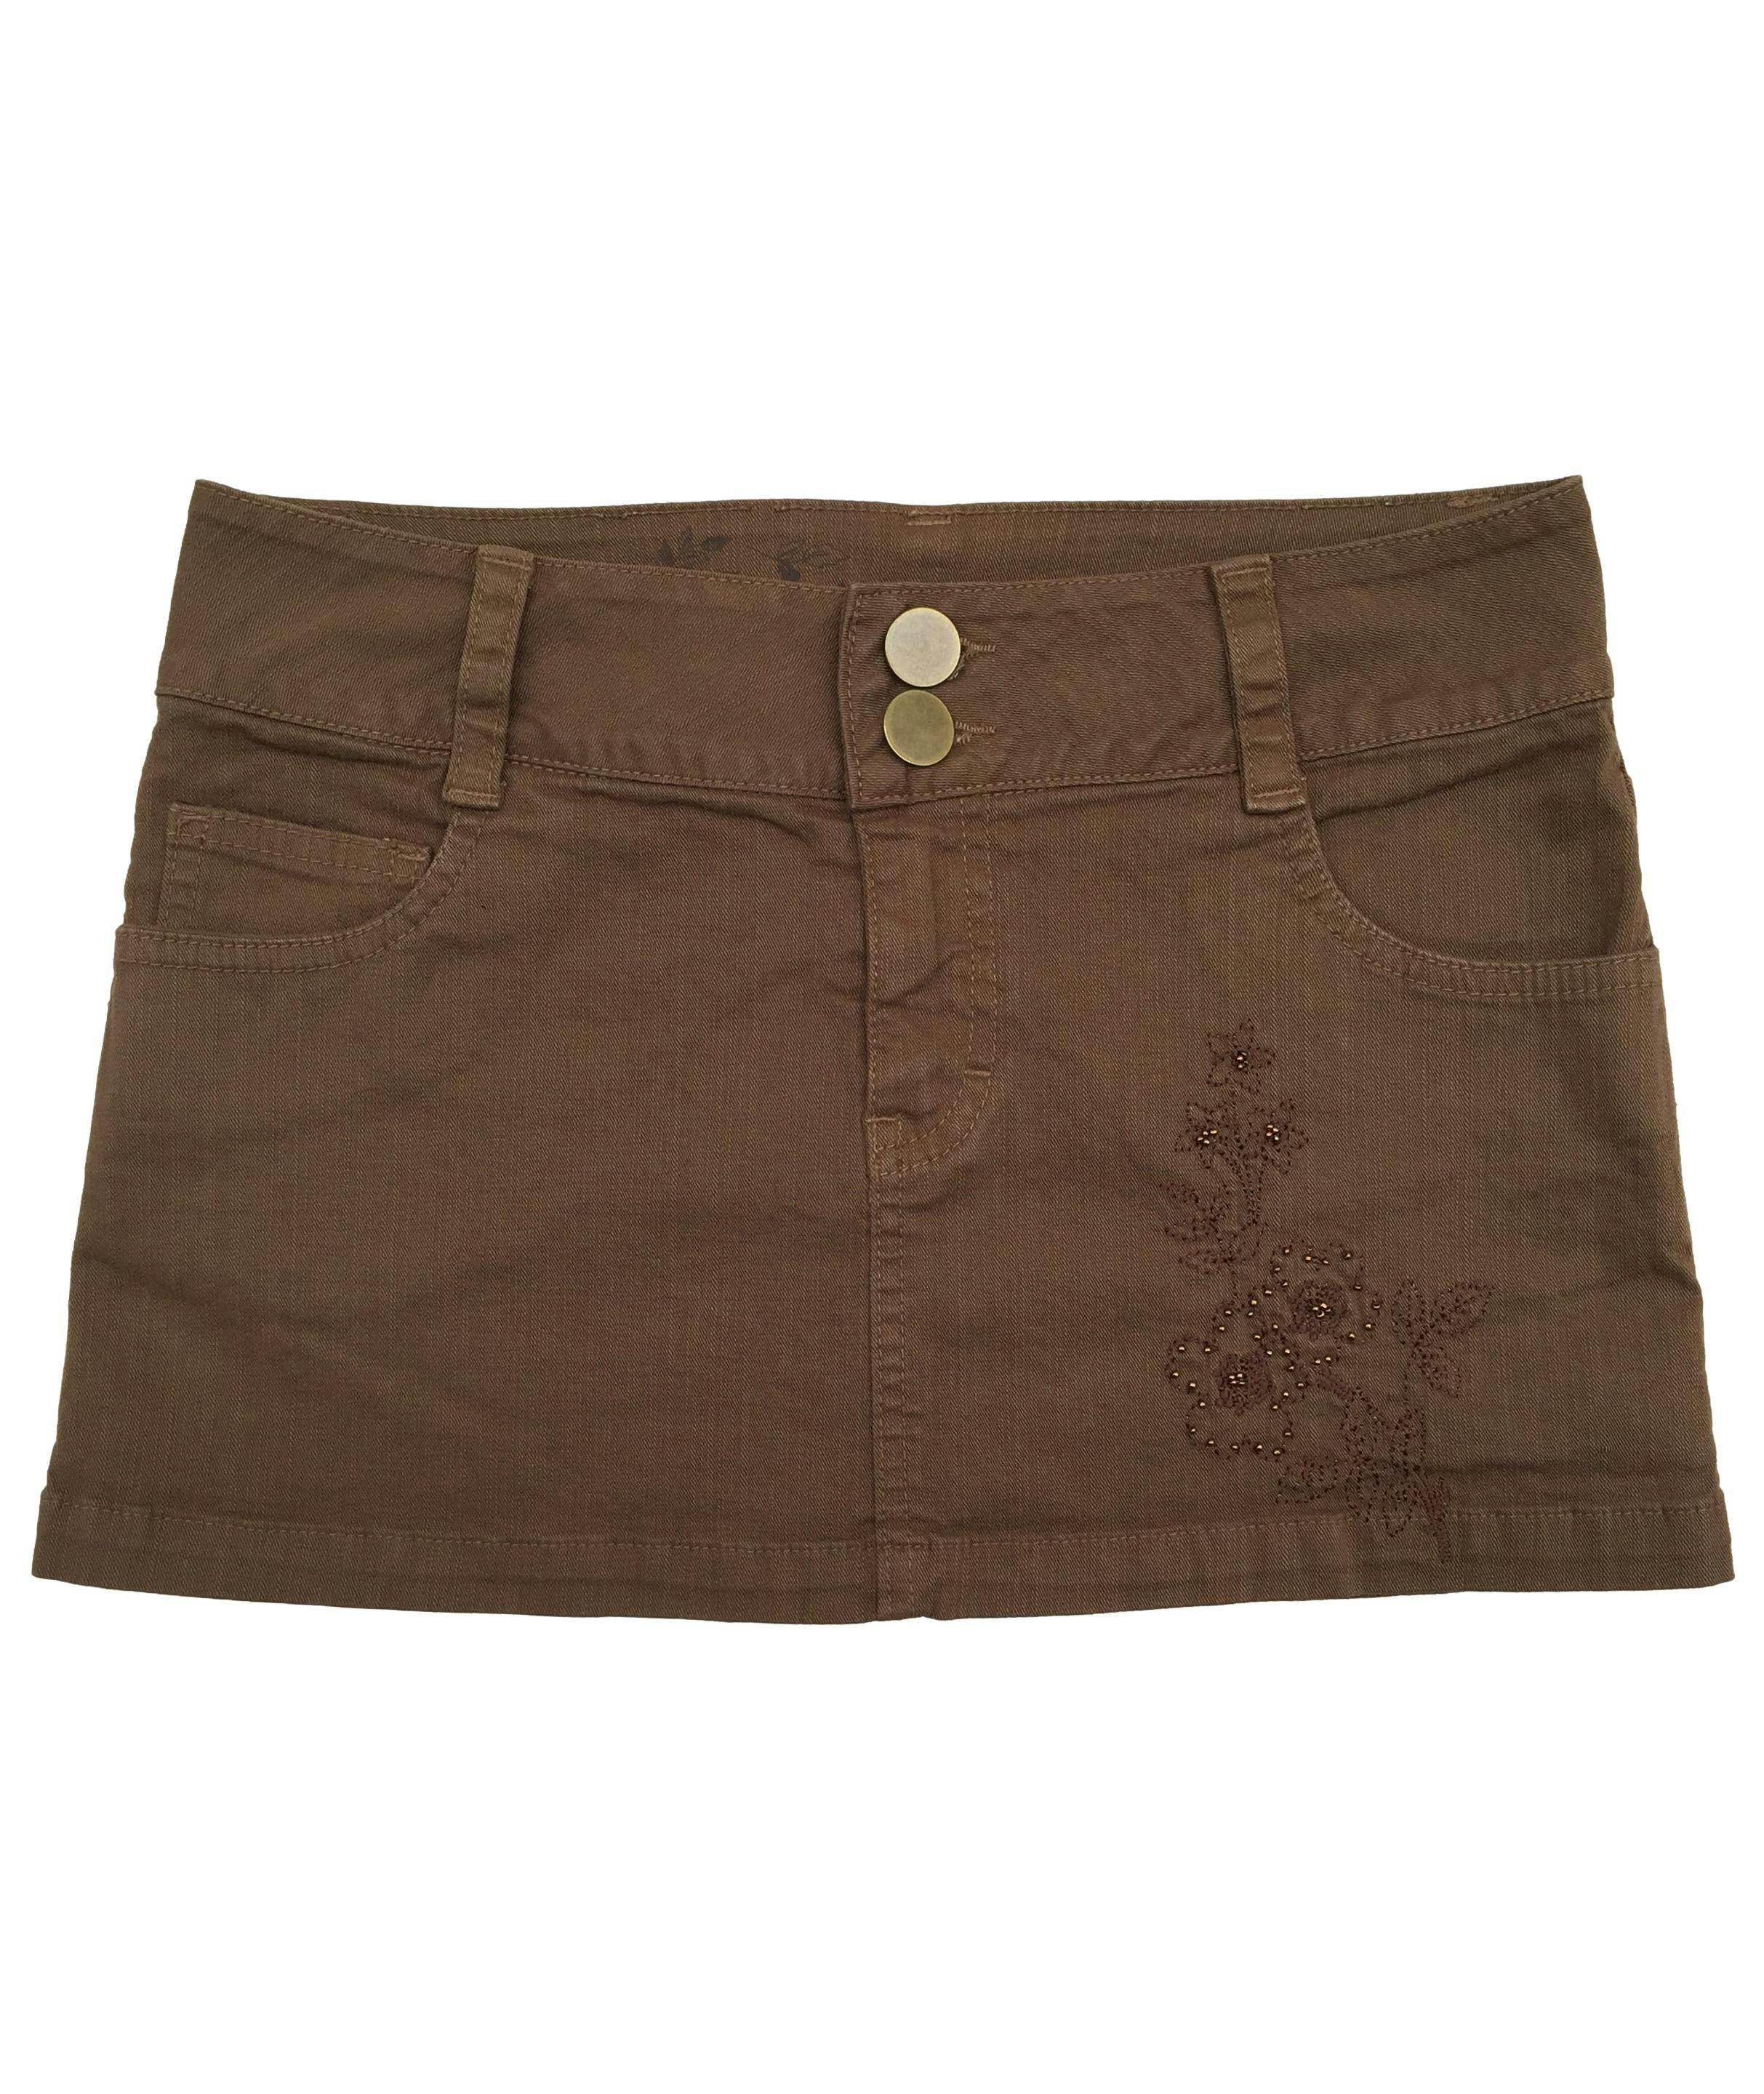 Falda Bugui de jean marrón con bolsillos y bordado delantero. Cintura 72cm Largo 30cm